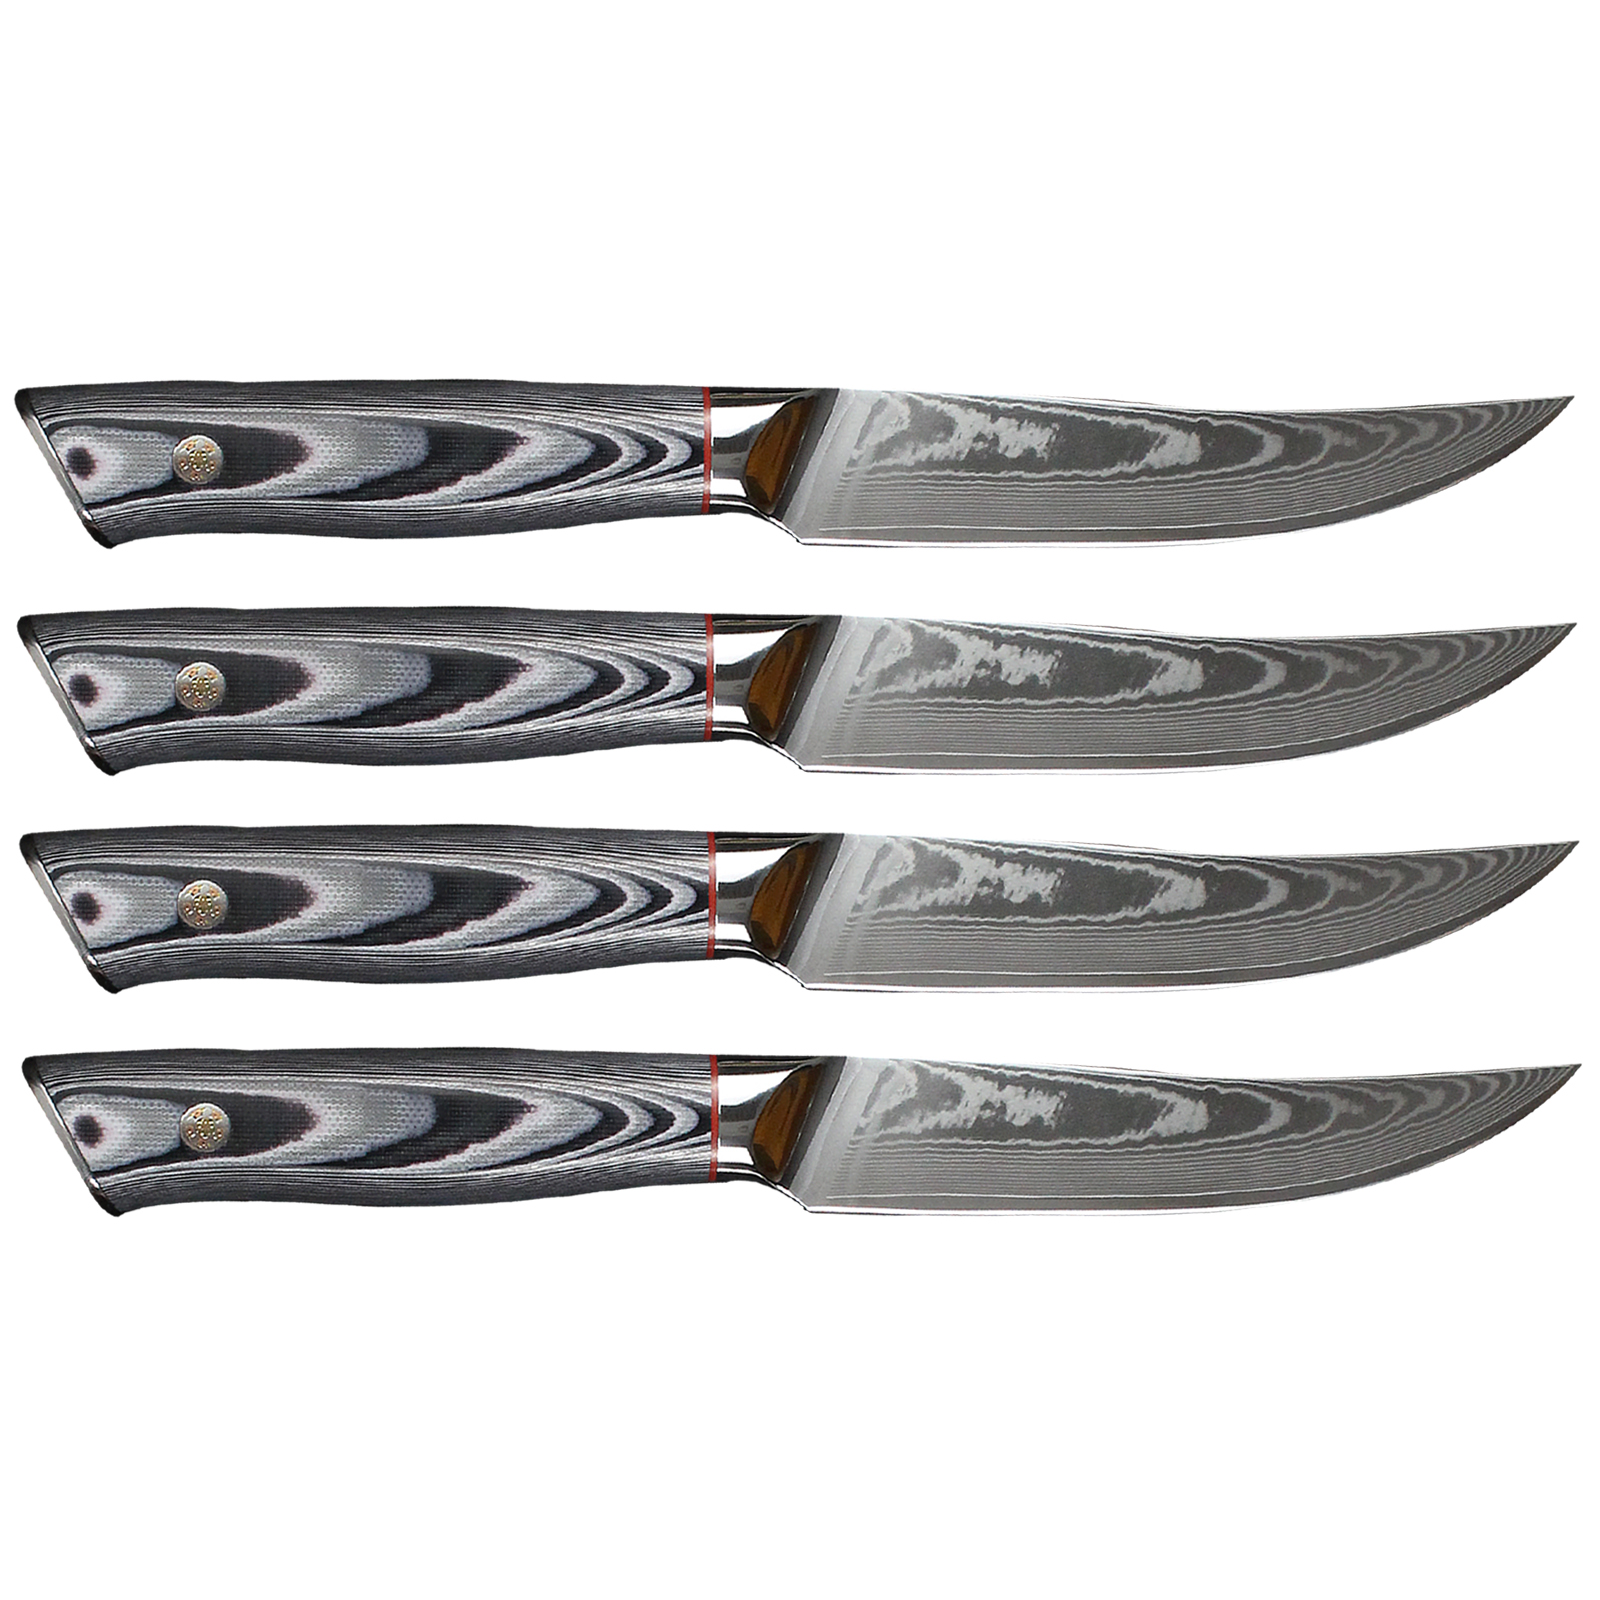 F.N. Sharp Damascus Steak Knives